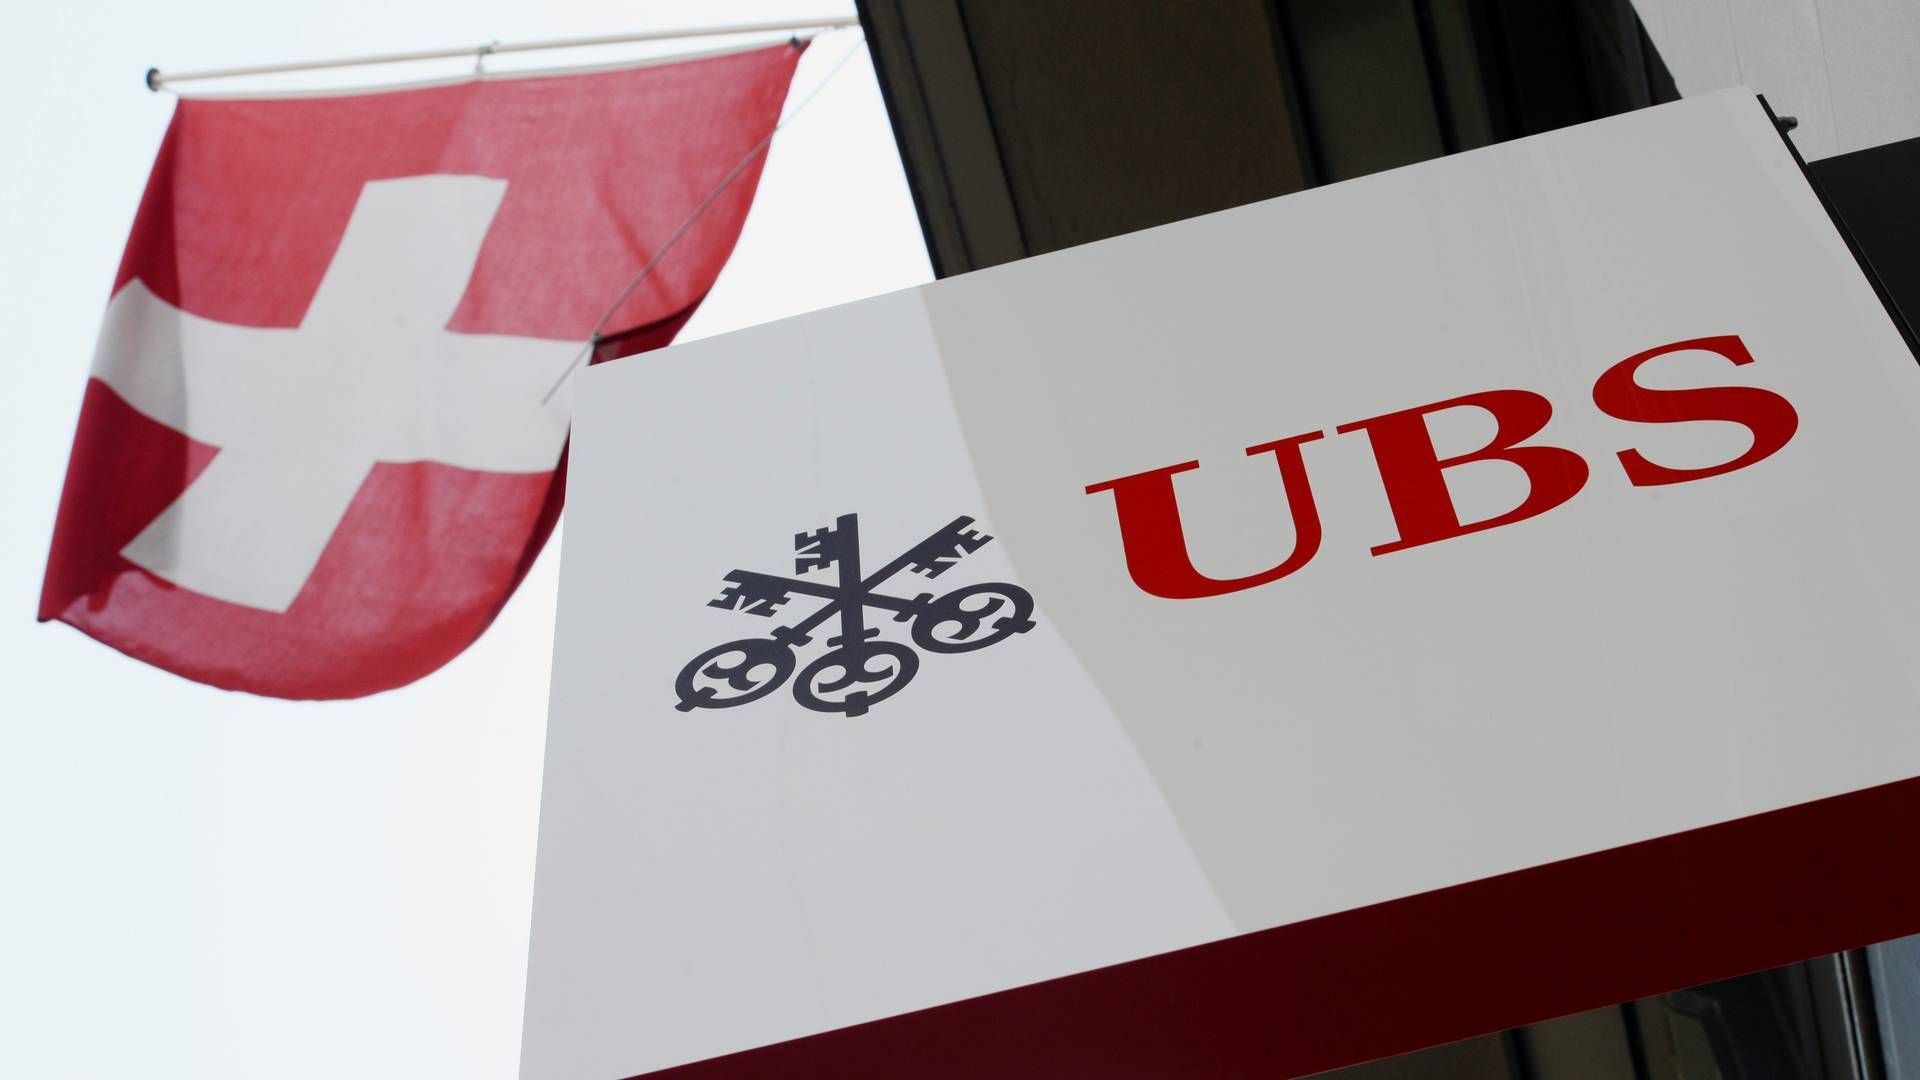 Den sveitsiske banken UBS. | Foto: NTB